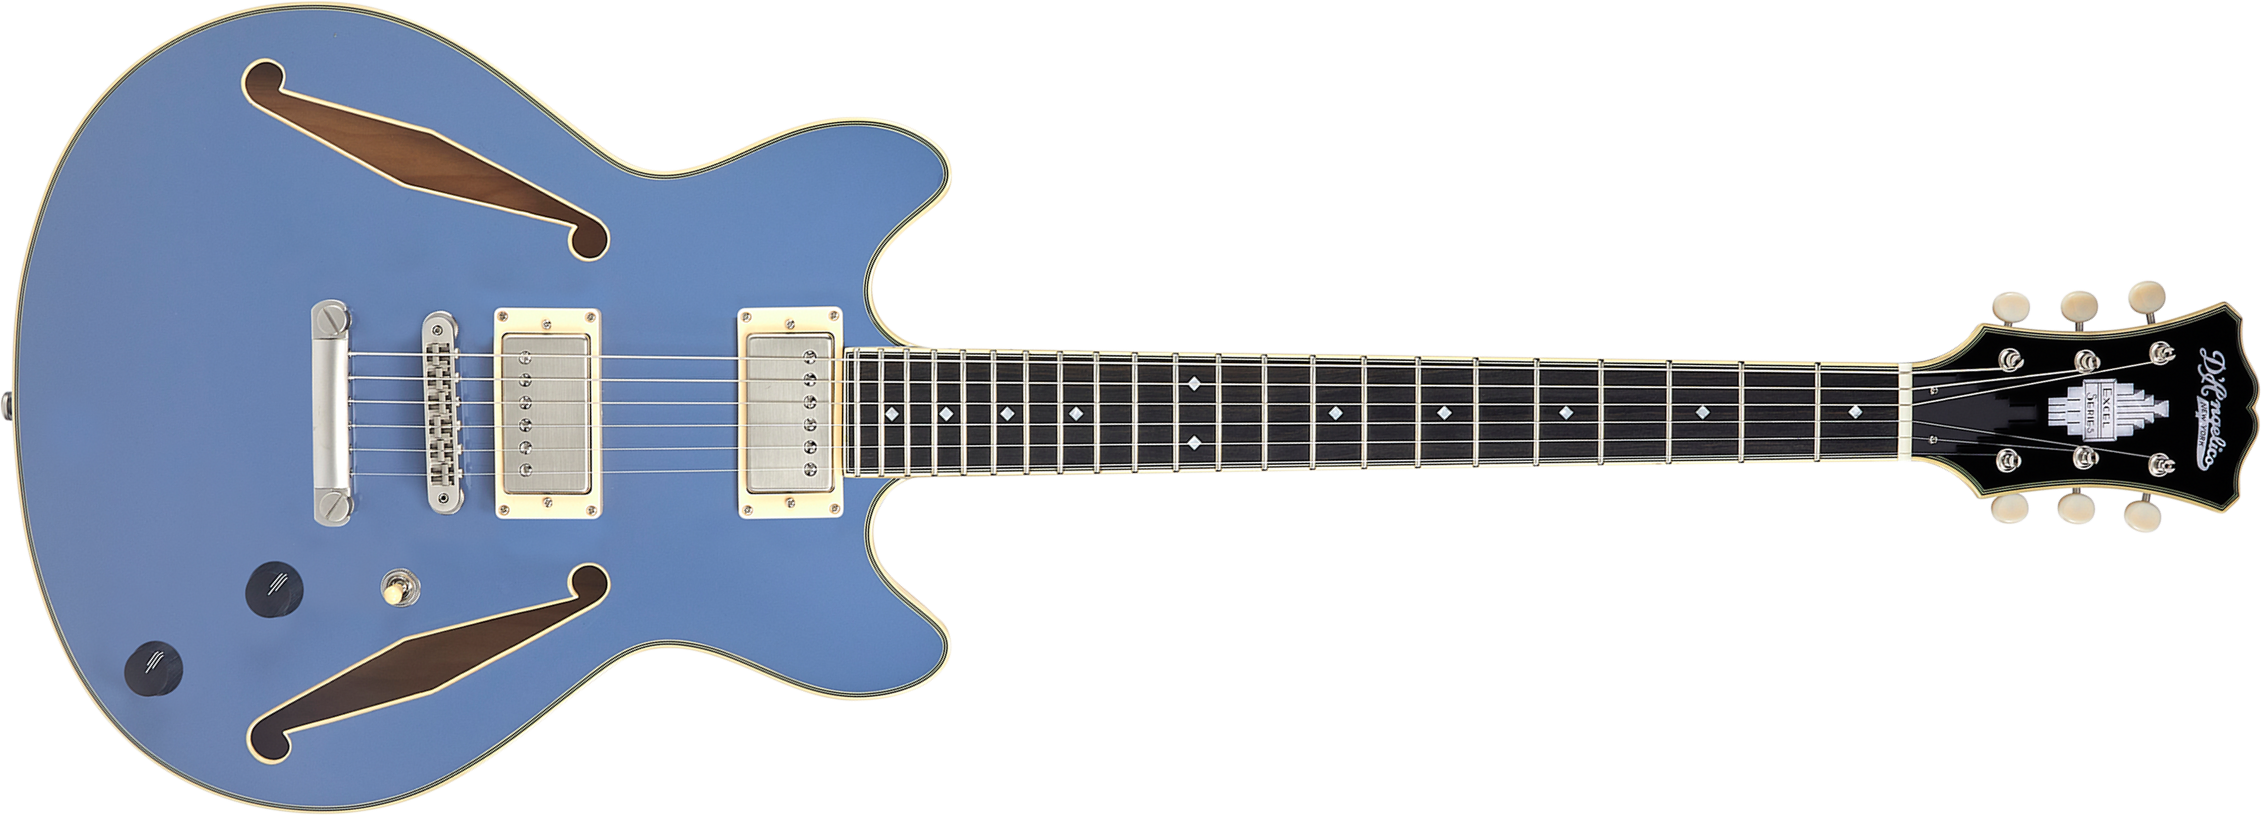 D'angelico Mini Dc Tour Excel 2h Ht Eb - Slate Blue - Semi hollow elektriche gitaar - Main picture